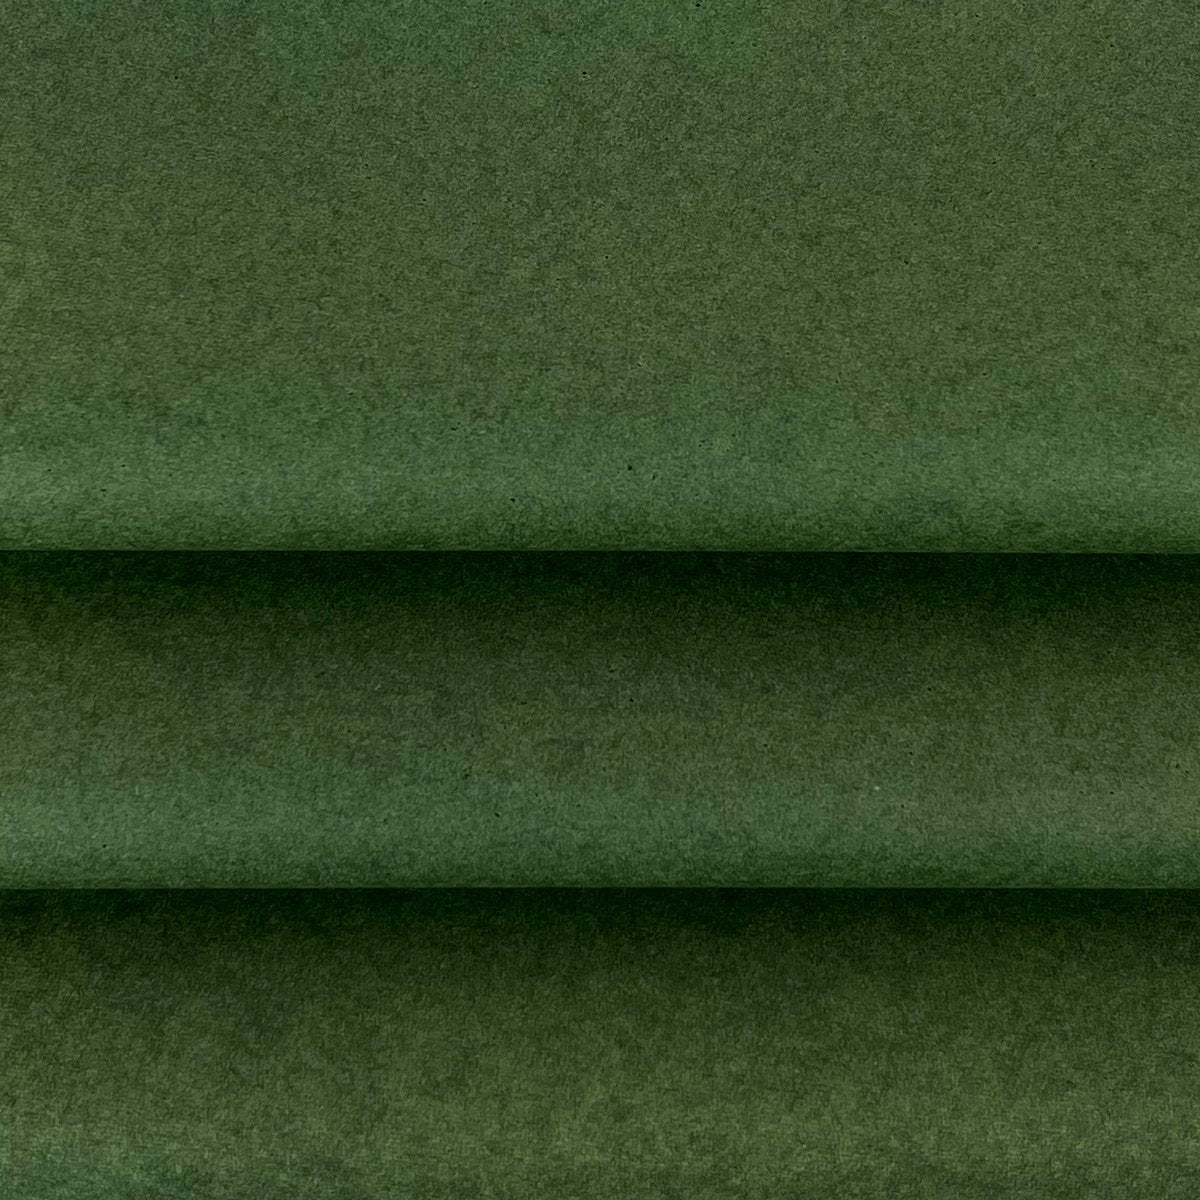 Vloeipapier kleur Groen